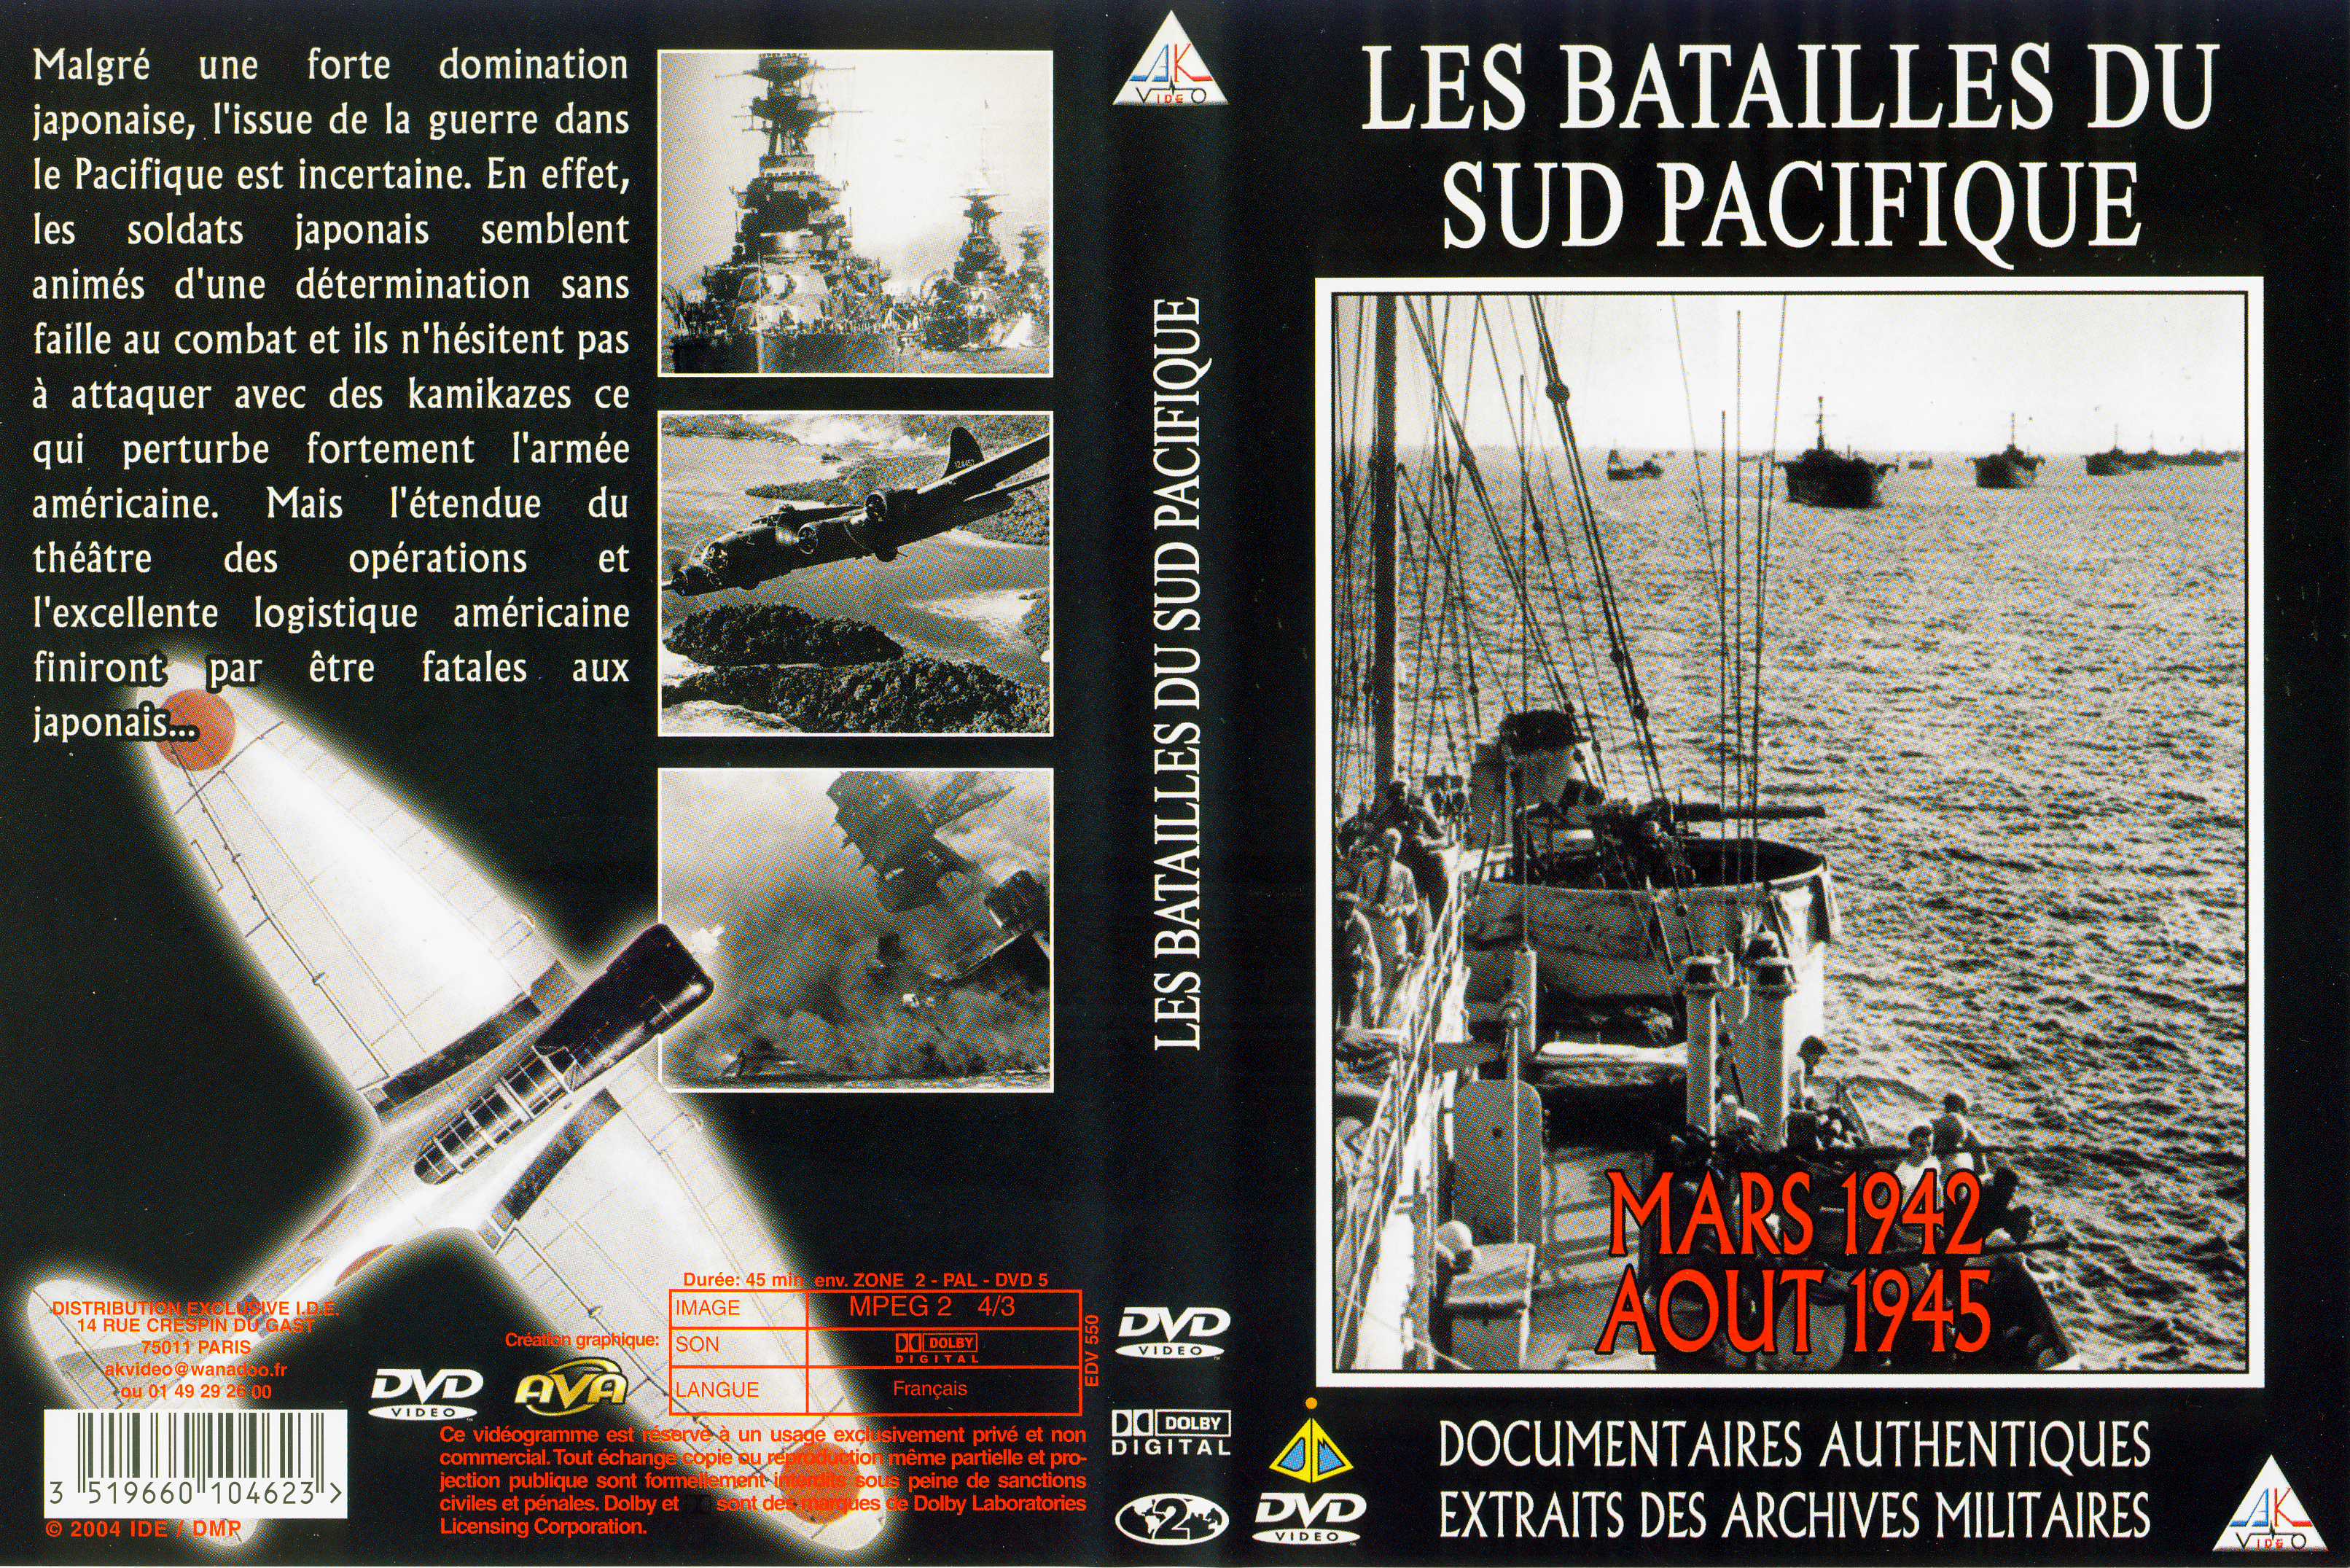 Jaquette DVD Les batailles du sud pacifique